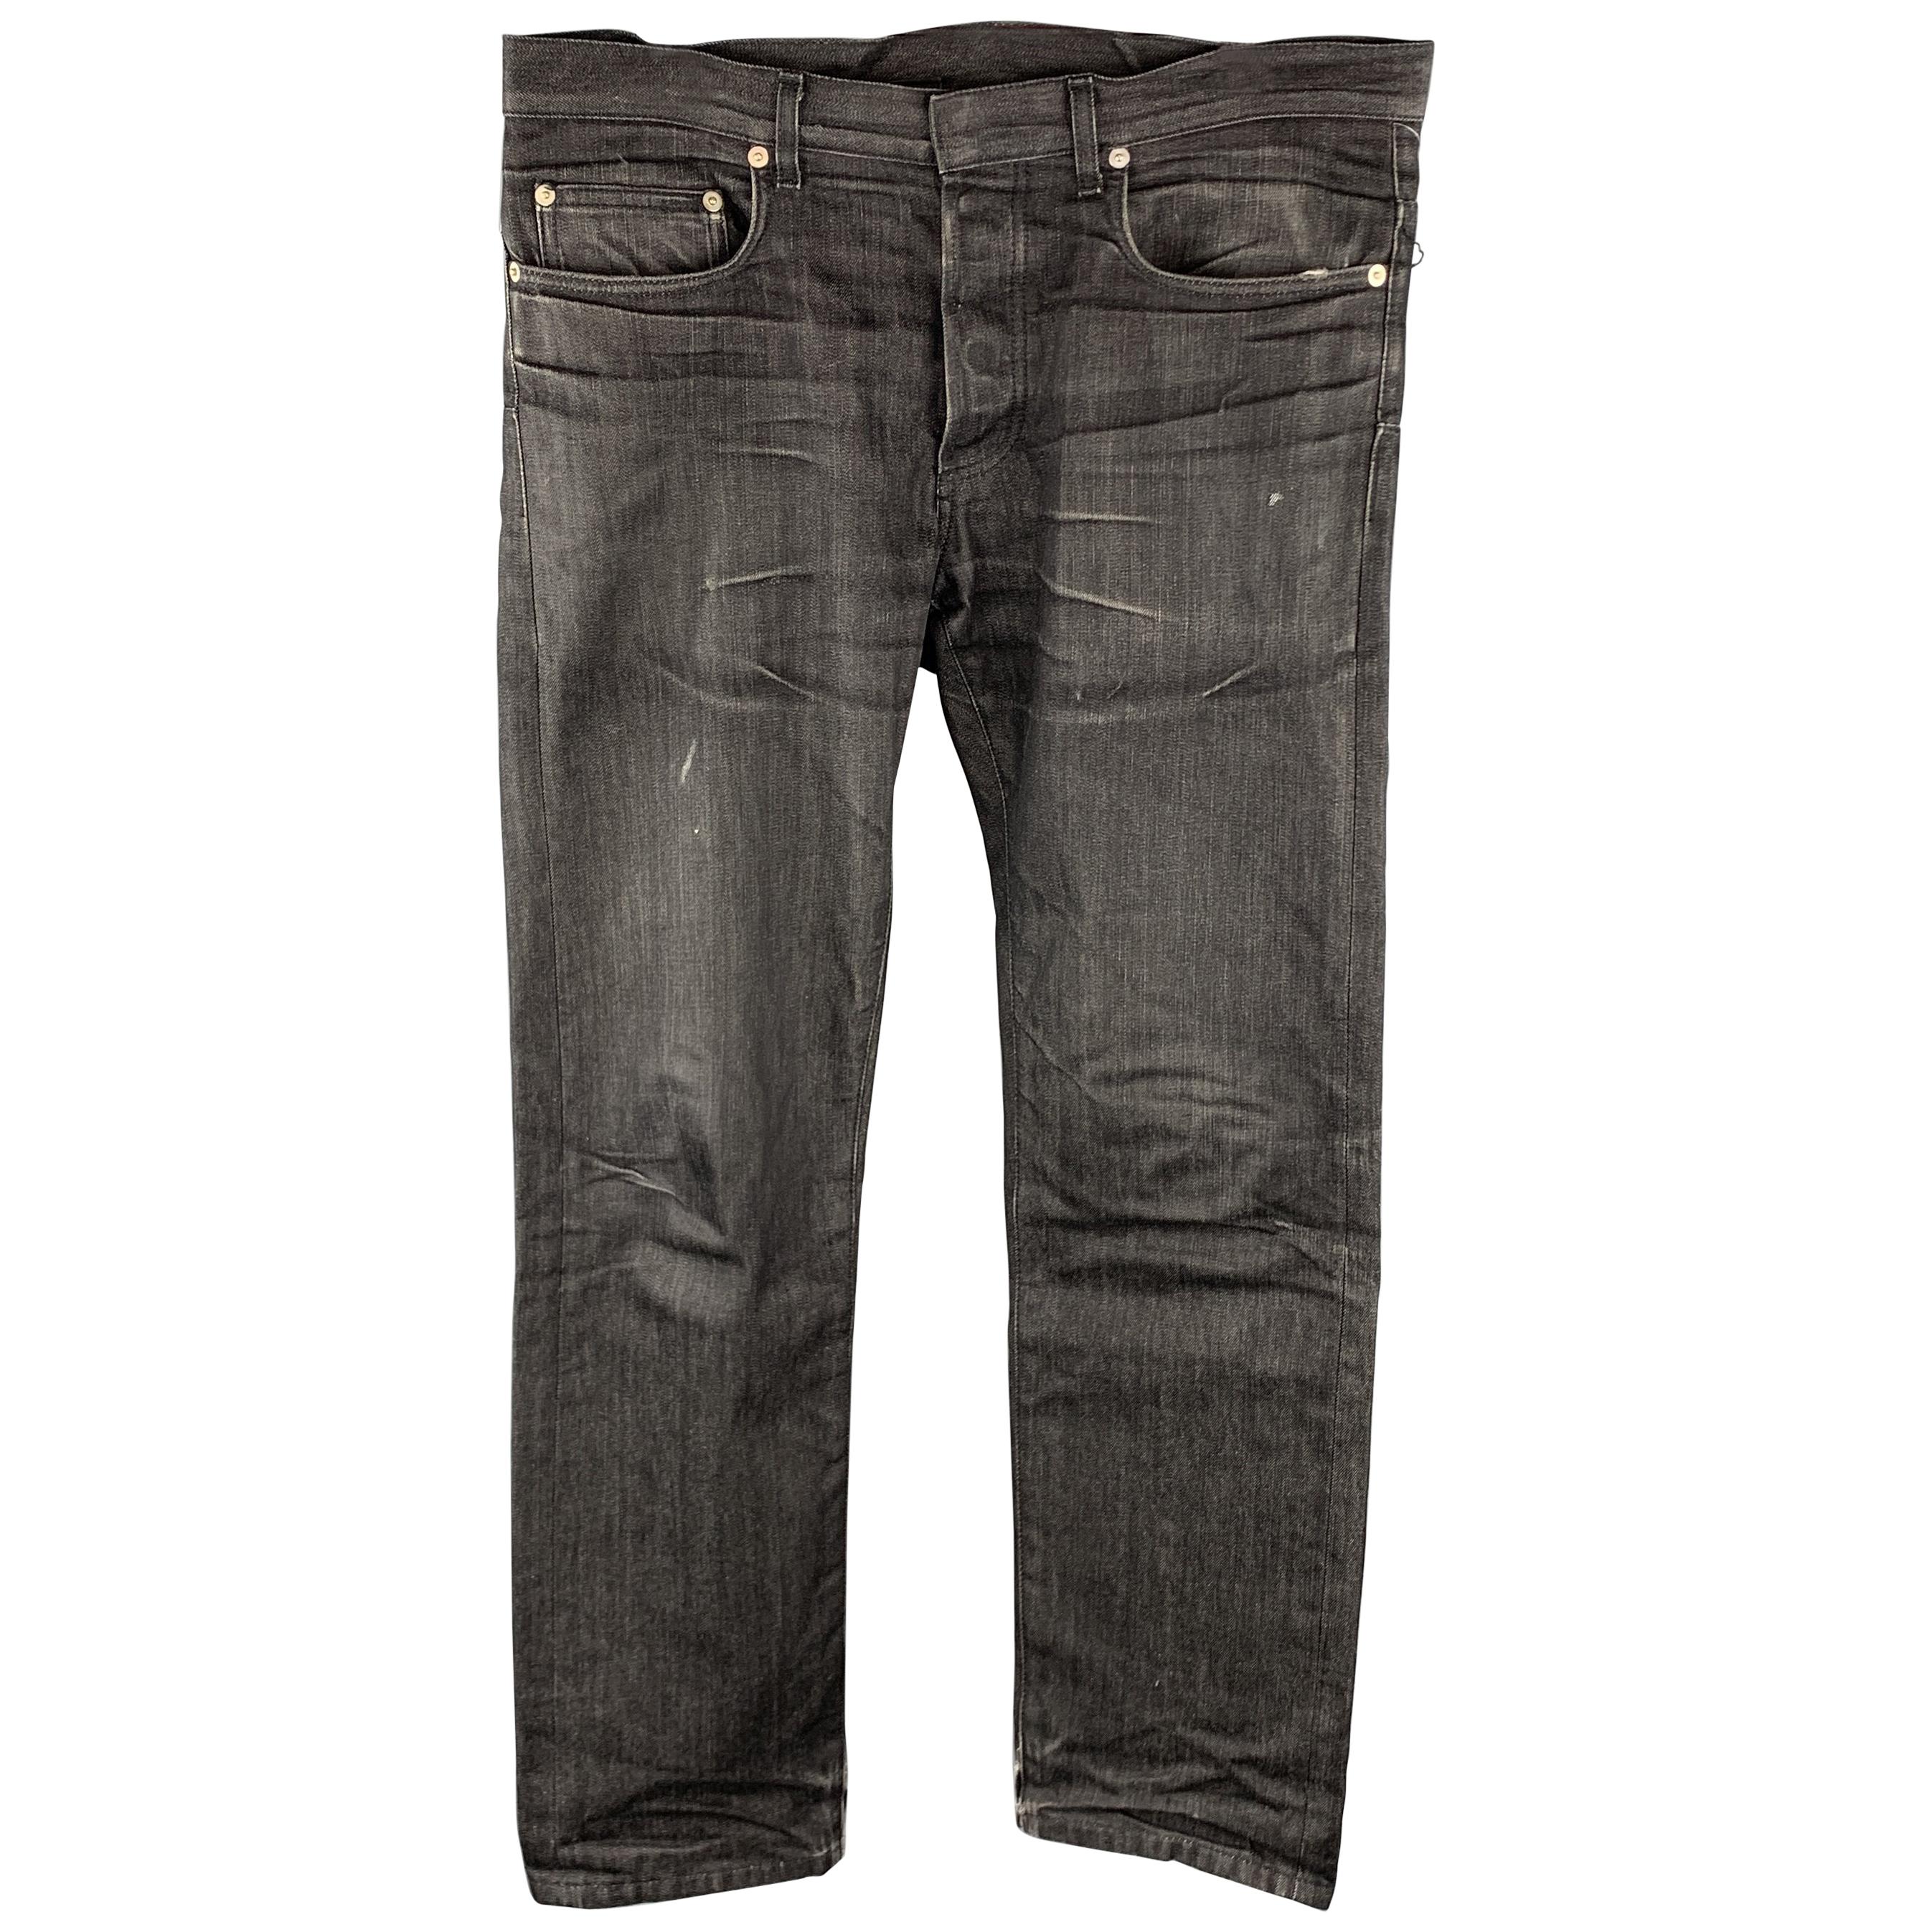 Dior Denim Jeans - 5 For Sale on 1stDibs | dior jeans for men, dior 